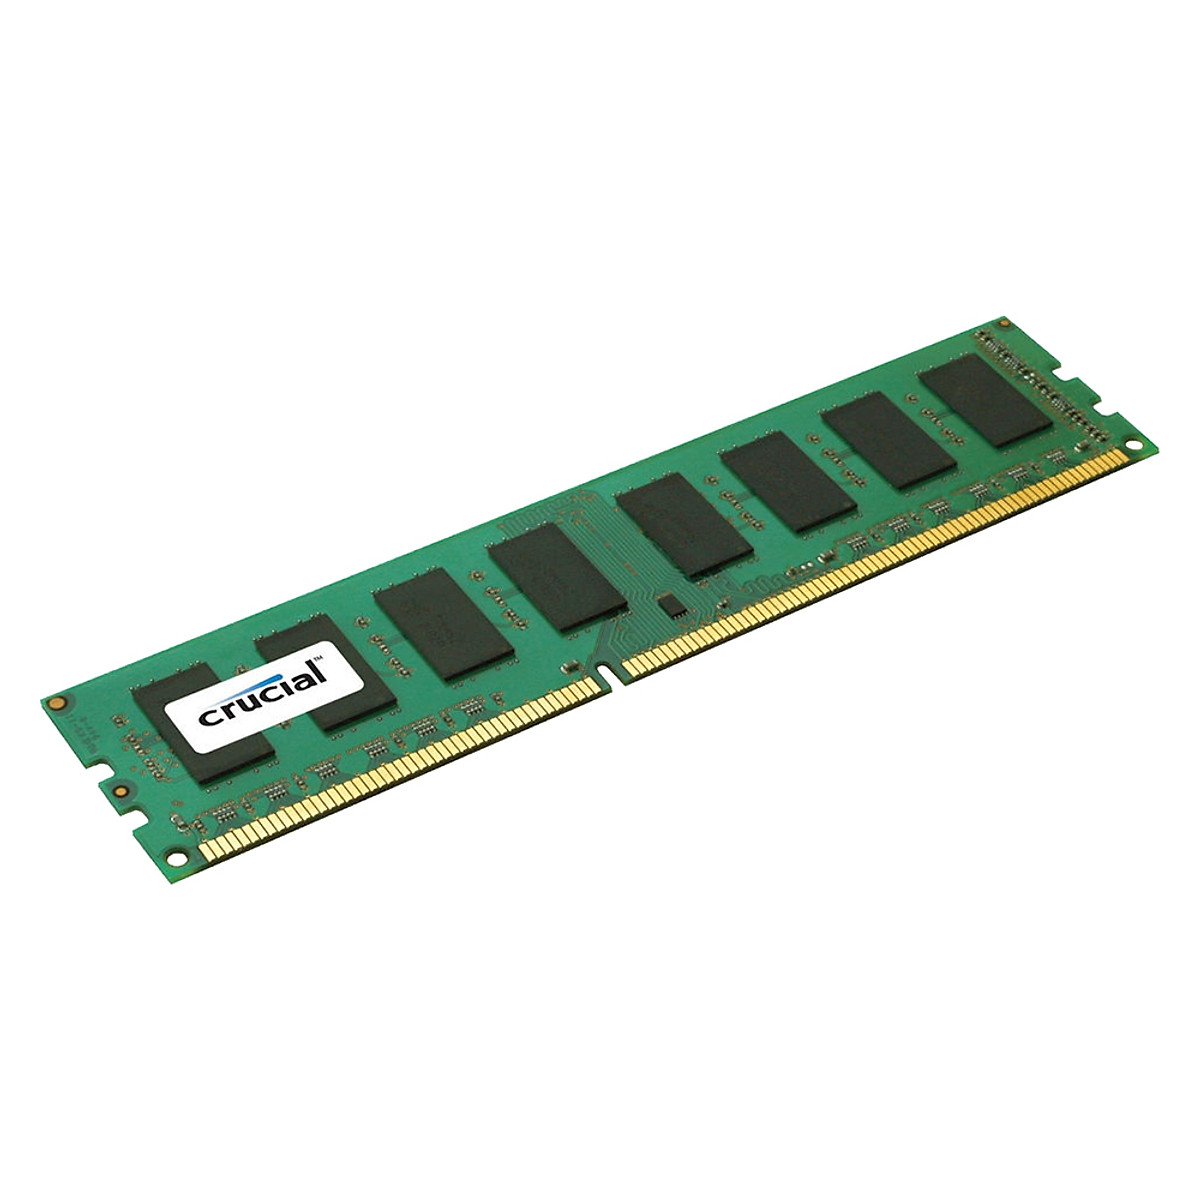 Crucial Mémoire RAM DDR3L (DDR3 SDRAM) Go PC3-12800 800 MHz | freixenet.com